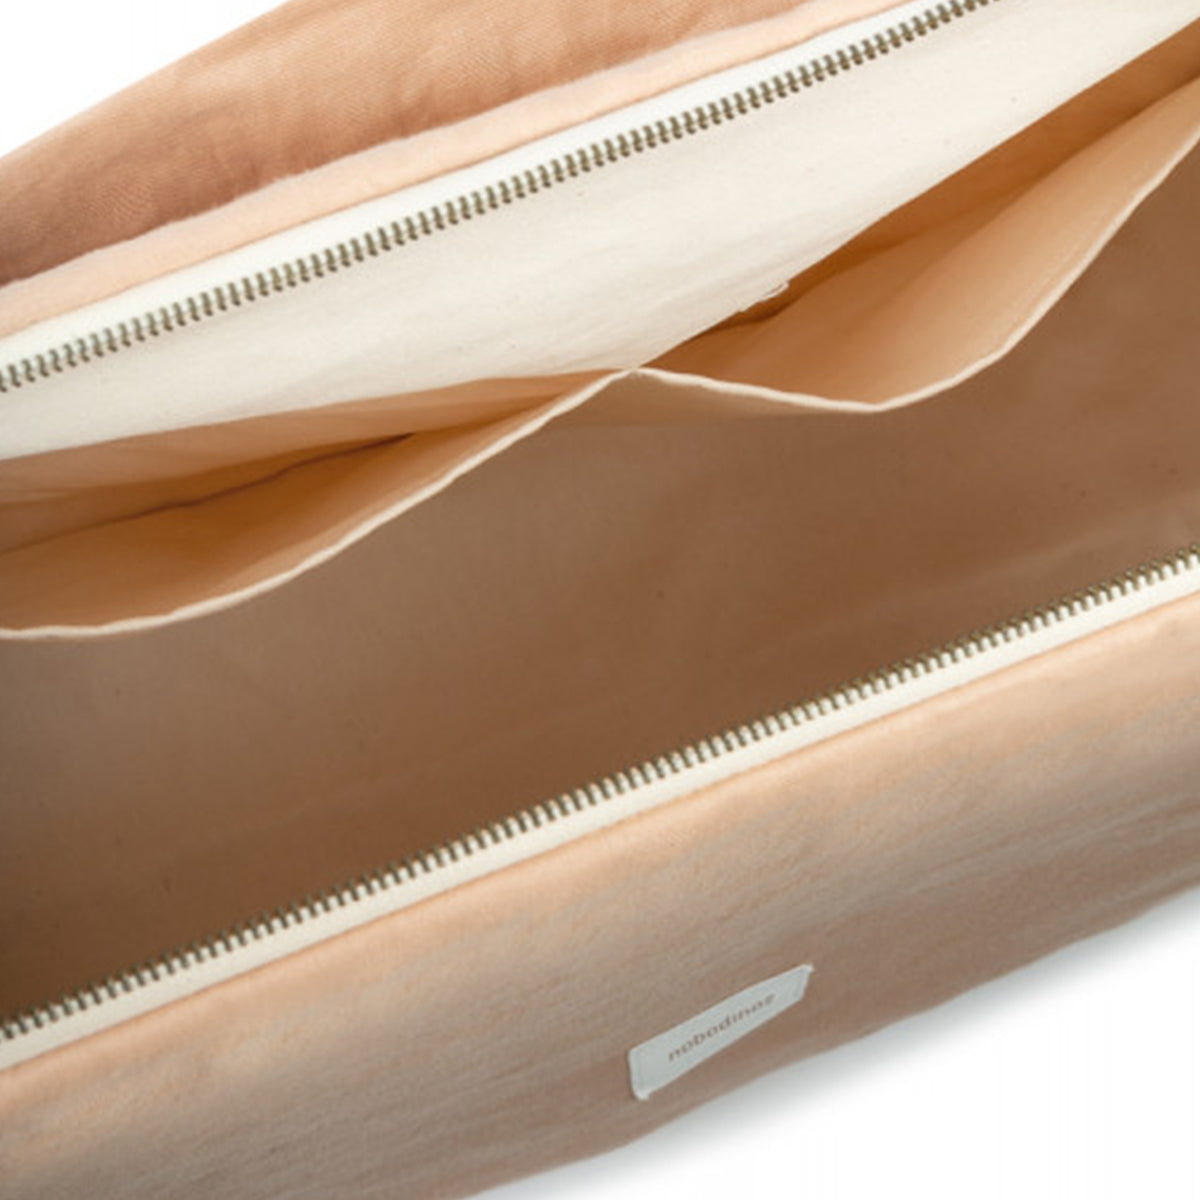 Met deze prachtige Nobodinoz lin français kinderwagentas sand kun je al je essentiële babyspulletjes overzichtelijk bij elkaar houden. De luiertas voor aan de kinderwagen is verkrijgbaar in trendy prints. VanZus